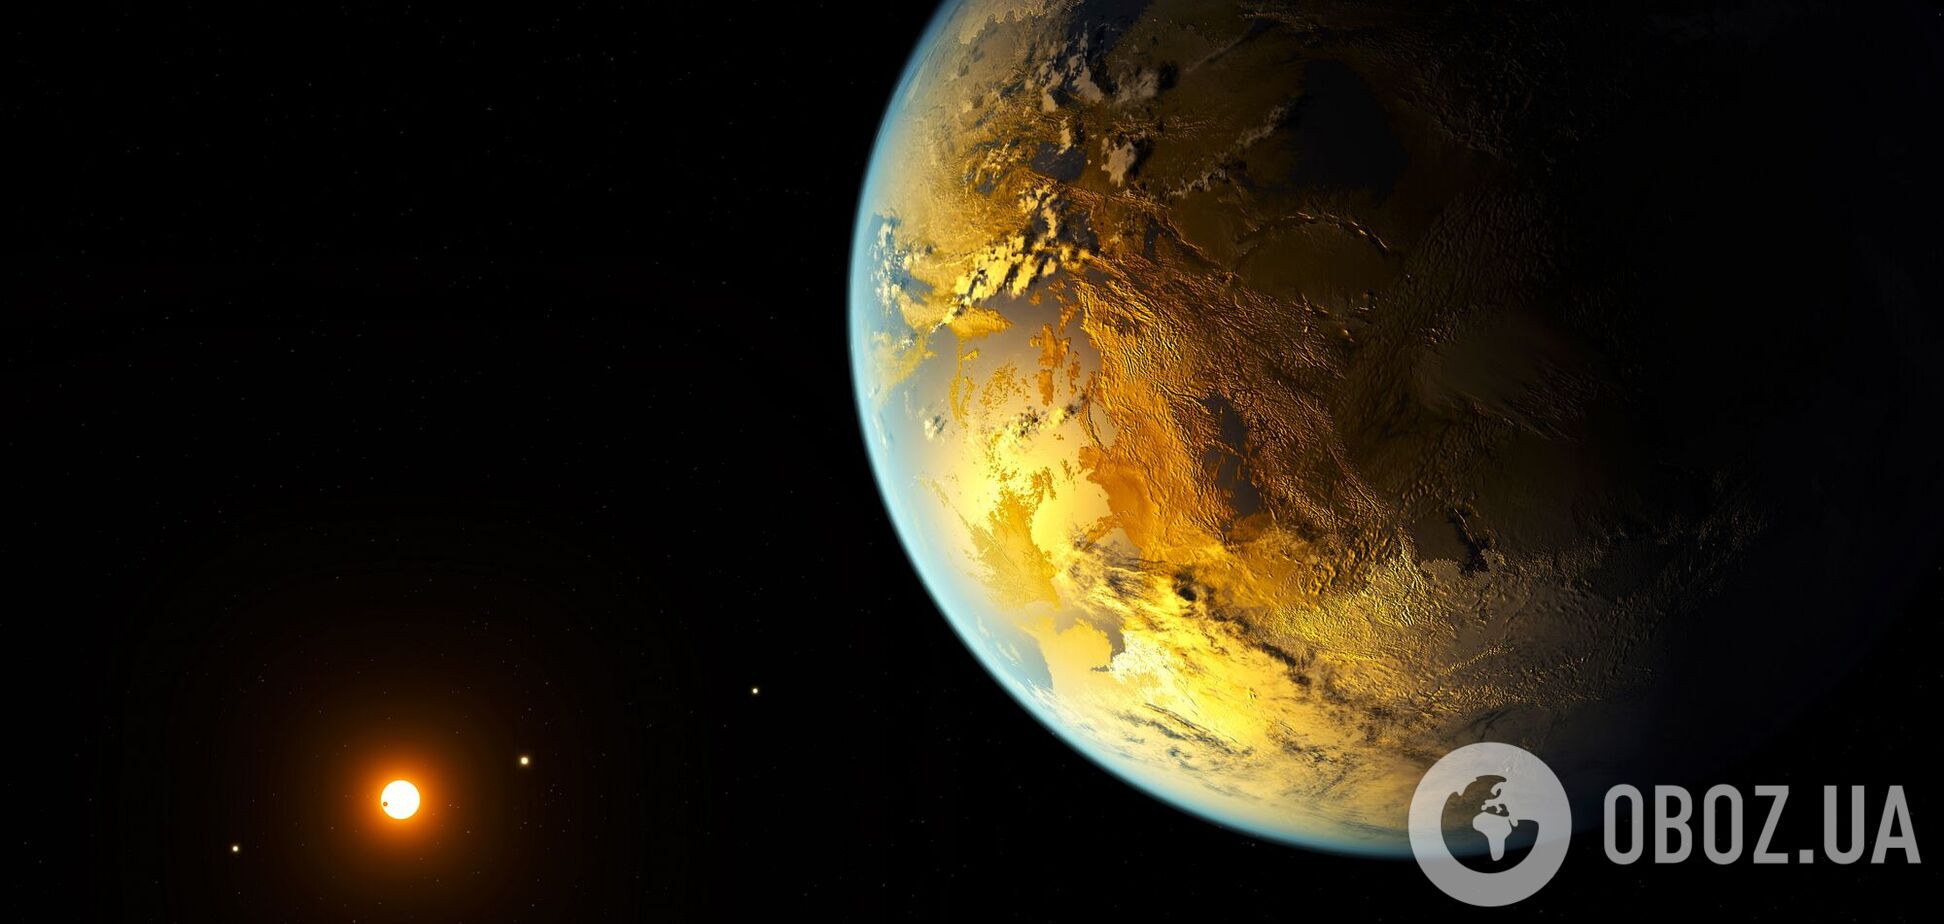 Ученые нашли подсказку, которая может раскрыть тайну инопланетной жизни на далеких планетах